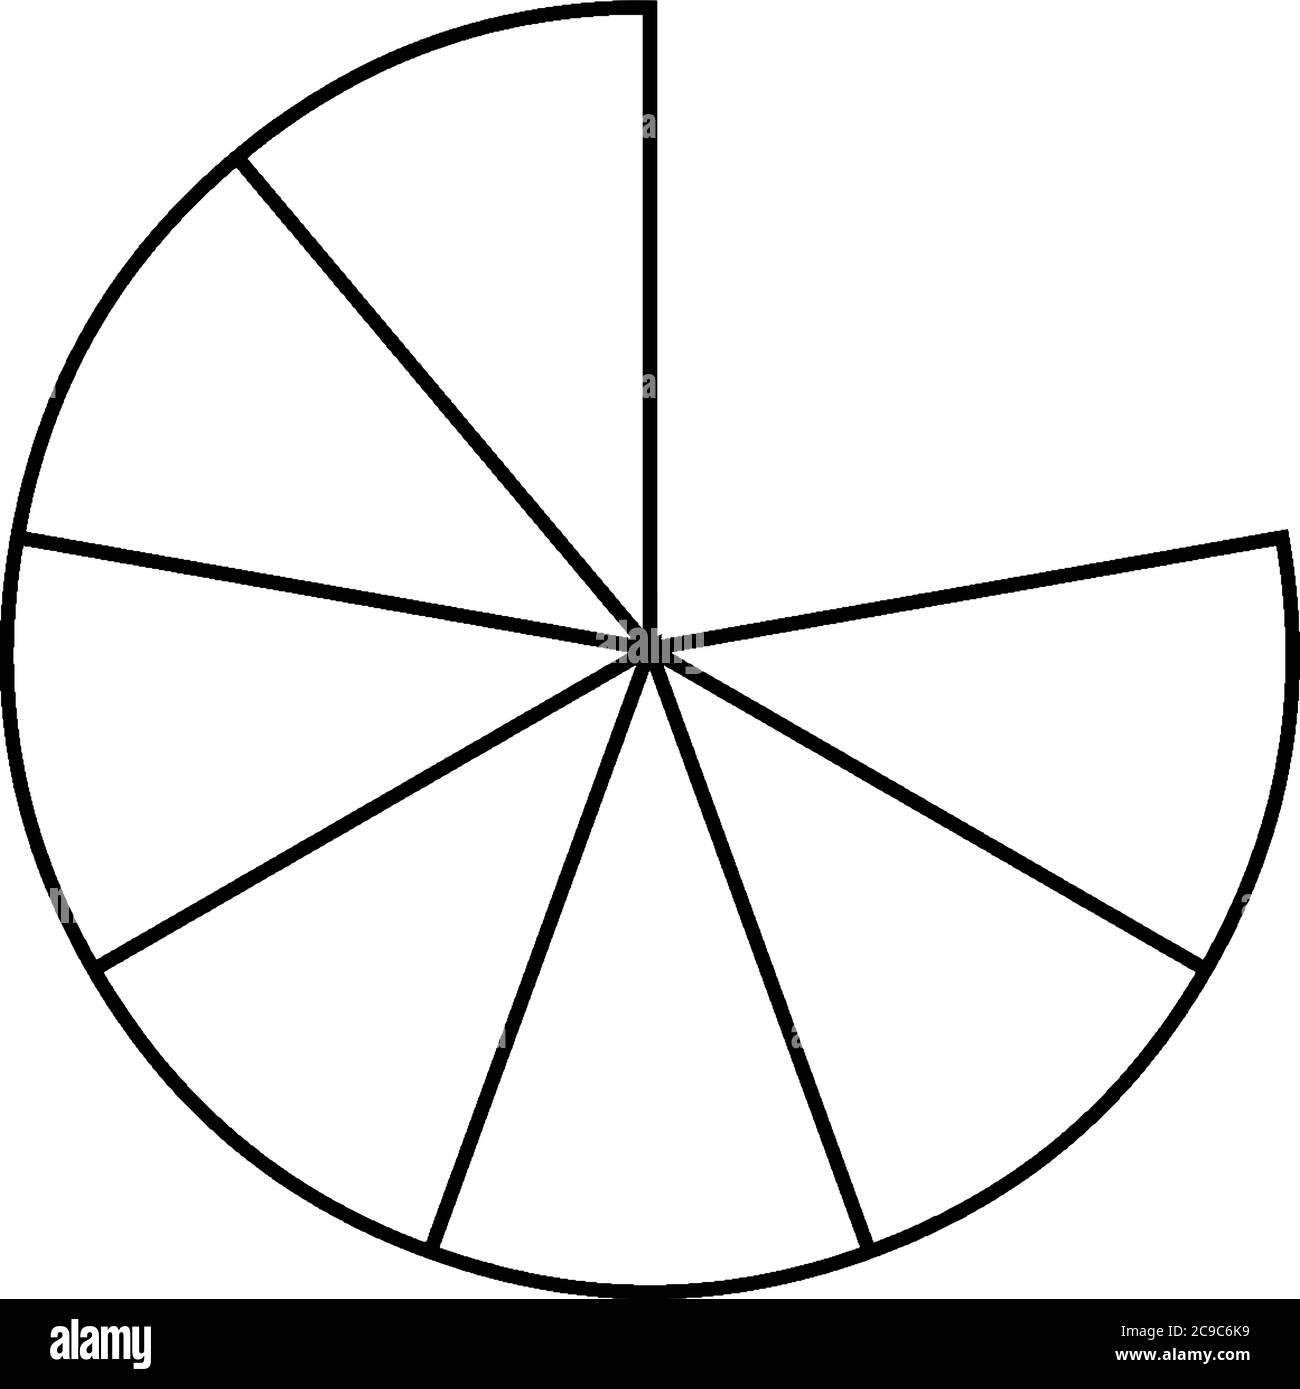 Una forma de círculo dividida en siete partes iguales que tienen 7/9, dibujo de línea vintage o ilustración de grabado. Ilustración del Vector